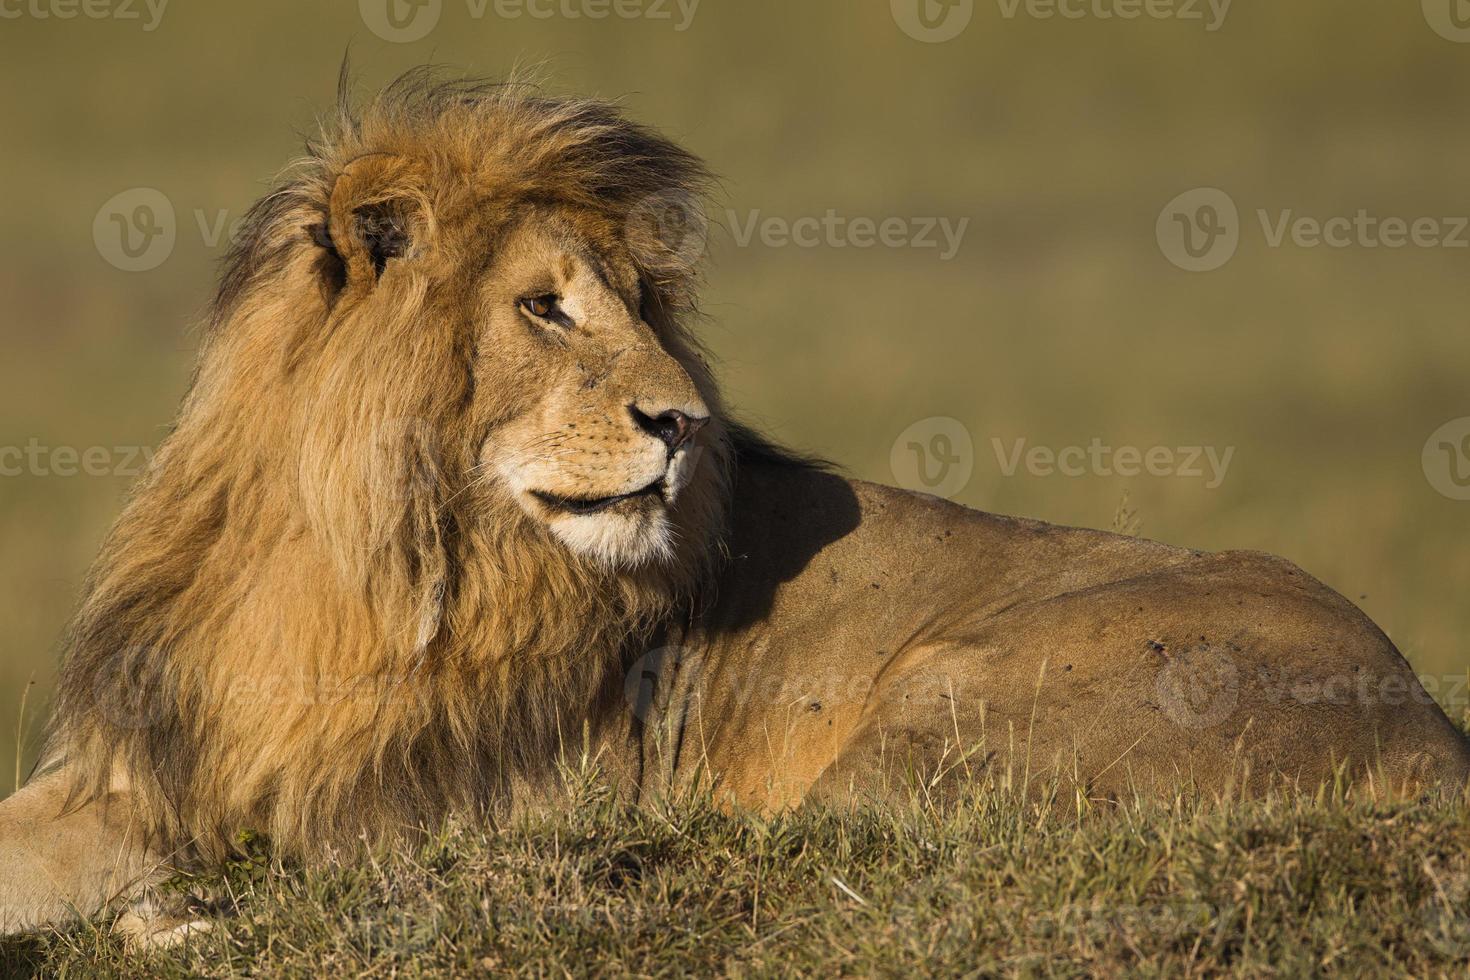 portrait, mâle, lion photo